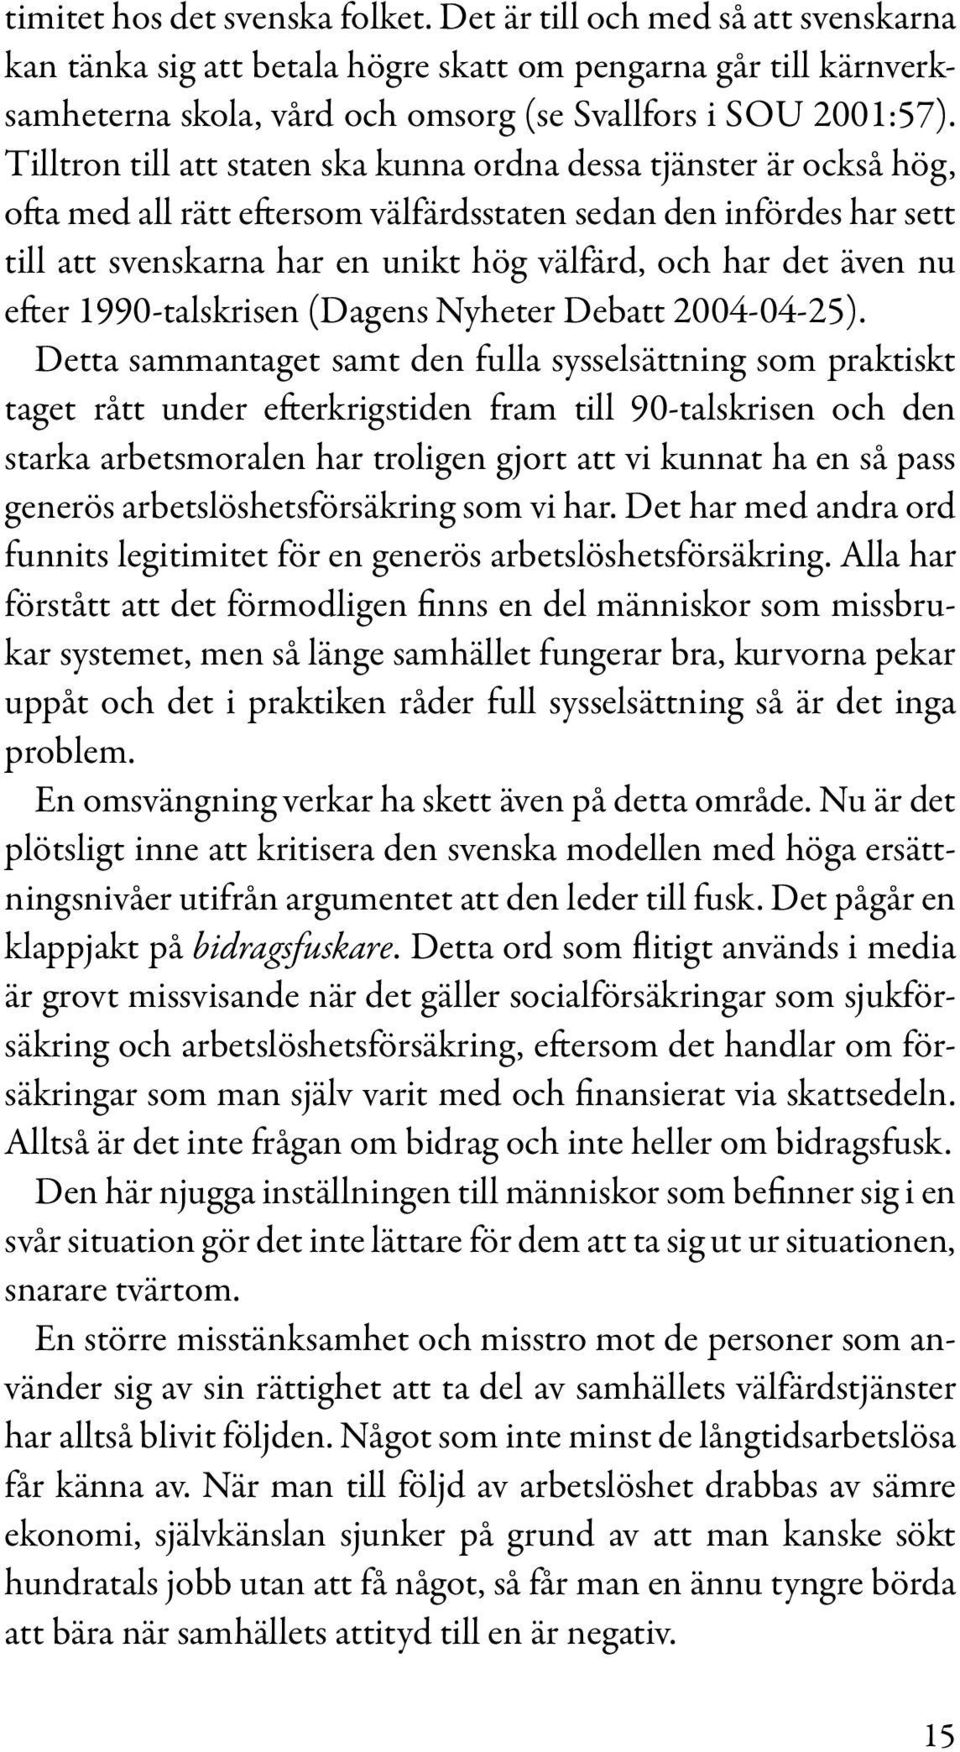 även nu efter 1990-talskrisen (Dagens Nyheter Debatt 2004-04-25).